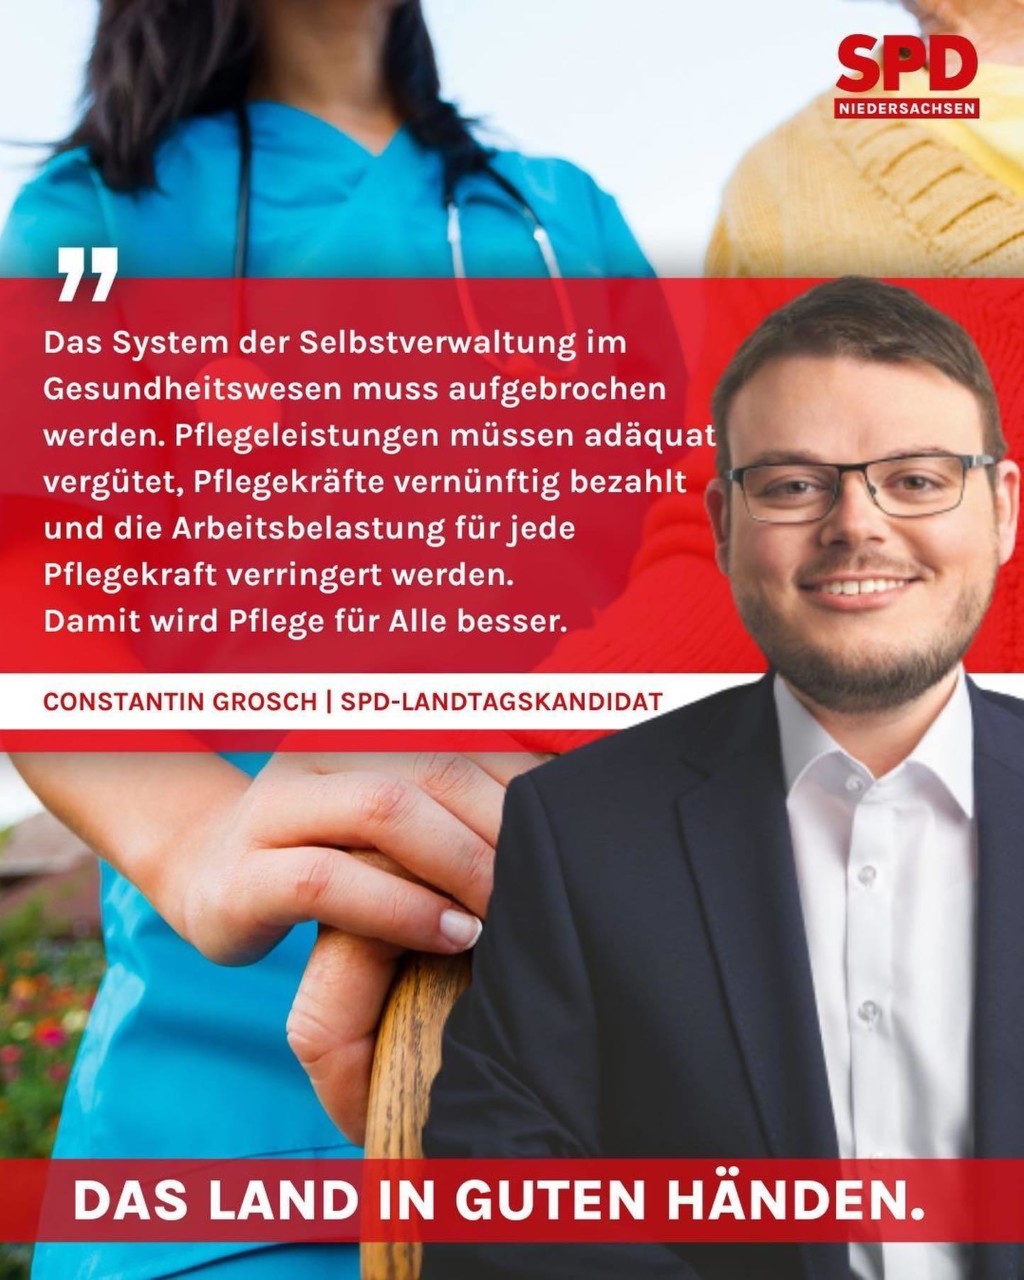 Constantin Grosch, SPD-Landtagskandidat. Text: Das System der Selbstverwaltung im Gesundheitswesen muss aufgebrochen werden. Pflegeleistungen müssen adäquat vergütet, Pflegekräfte vernünftig bezahlt und die Arbeitsbelastung für jede Pflegekraft verringert werden. Damit wird Pflege für Alle besser.